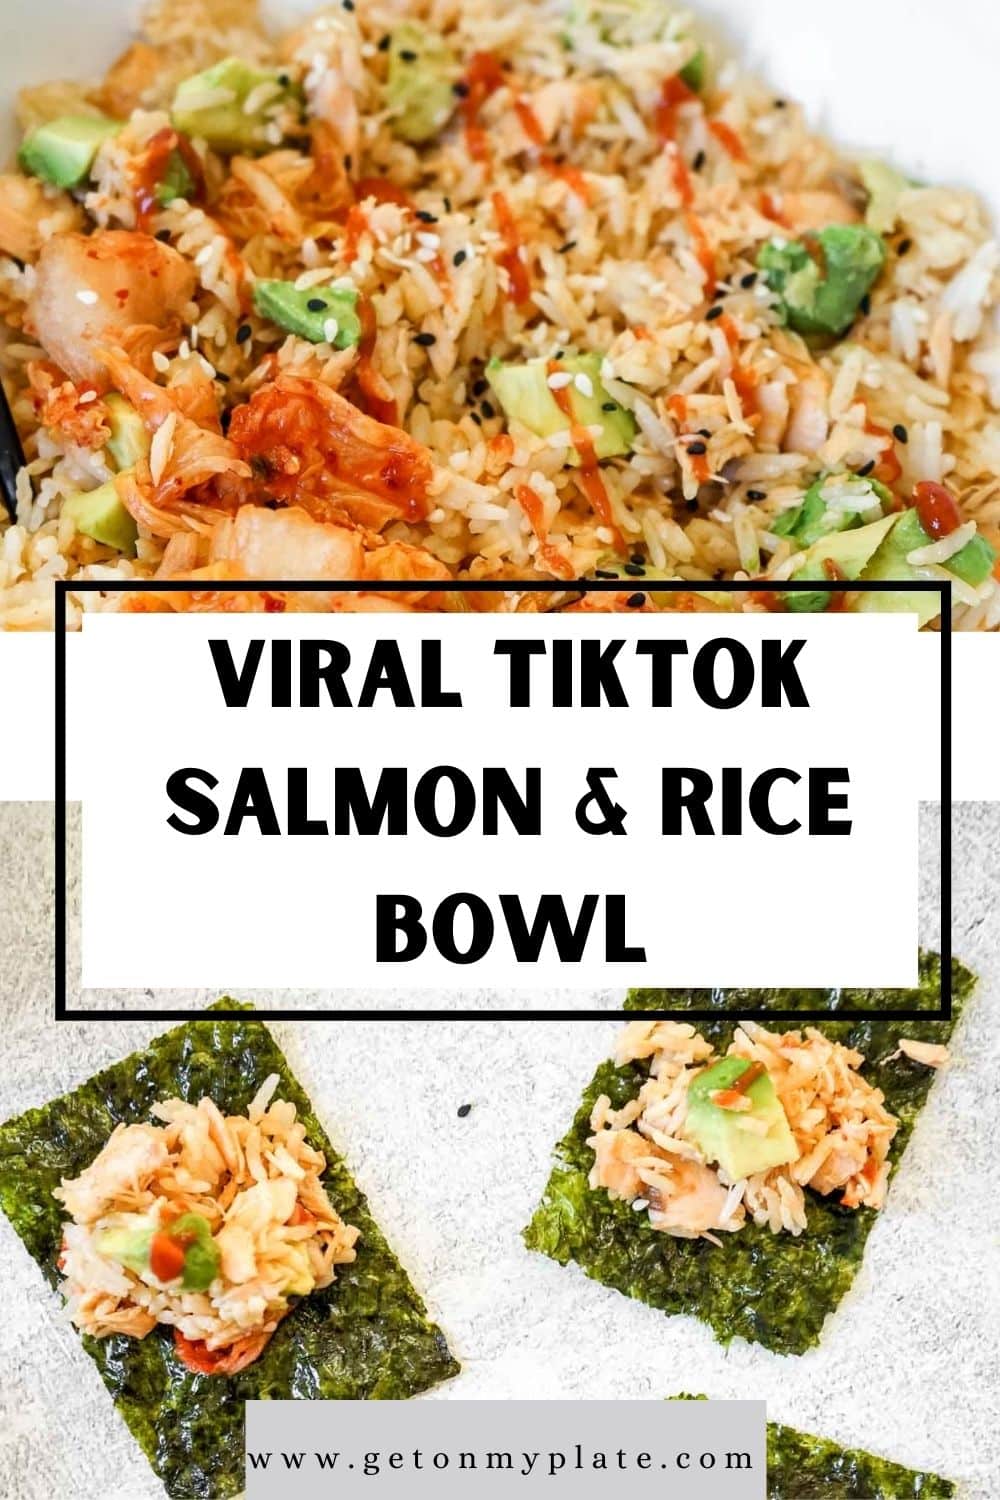 Viral Tiktok Salmon And Rice Bowl Recipe Recipe Get On My Plate 6844